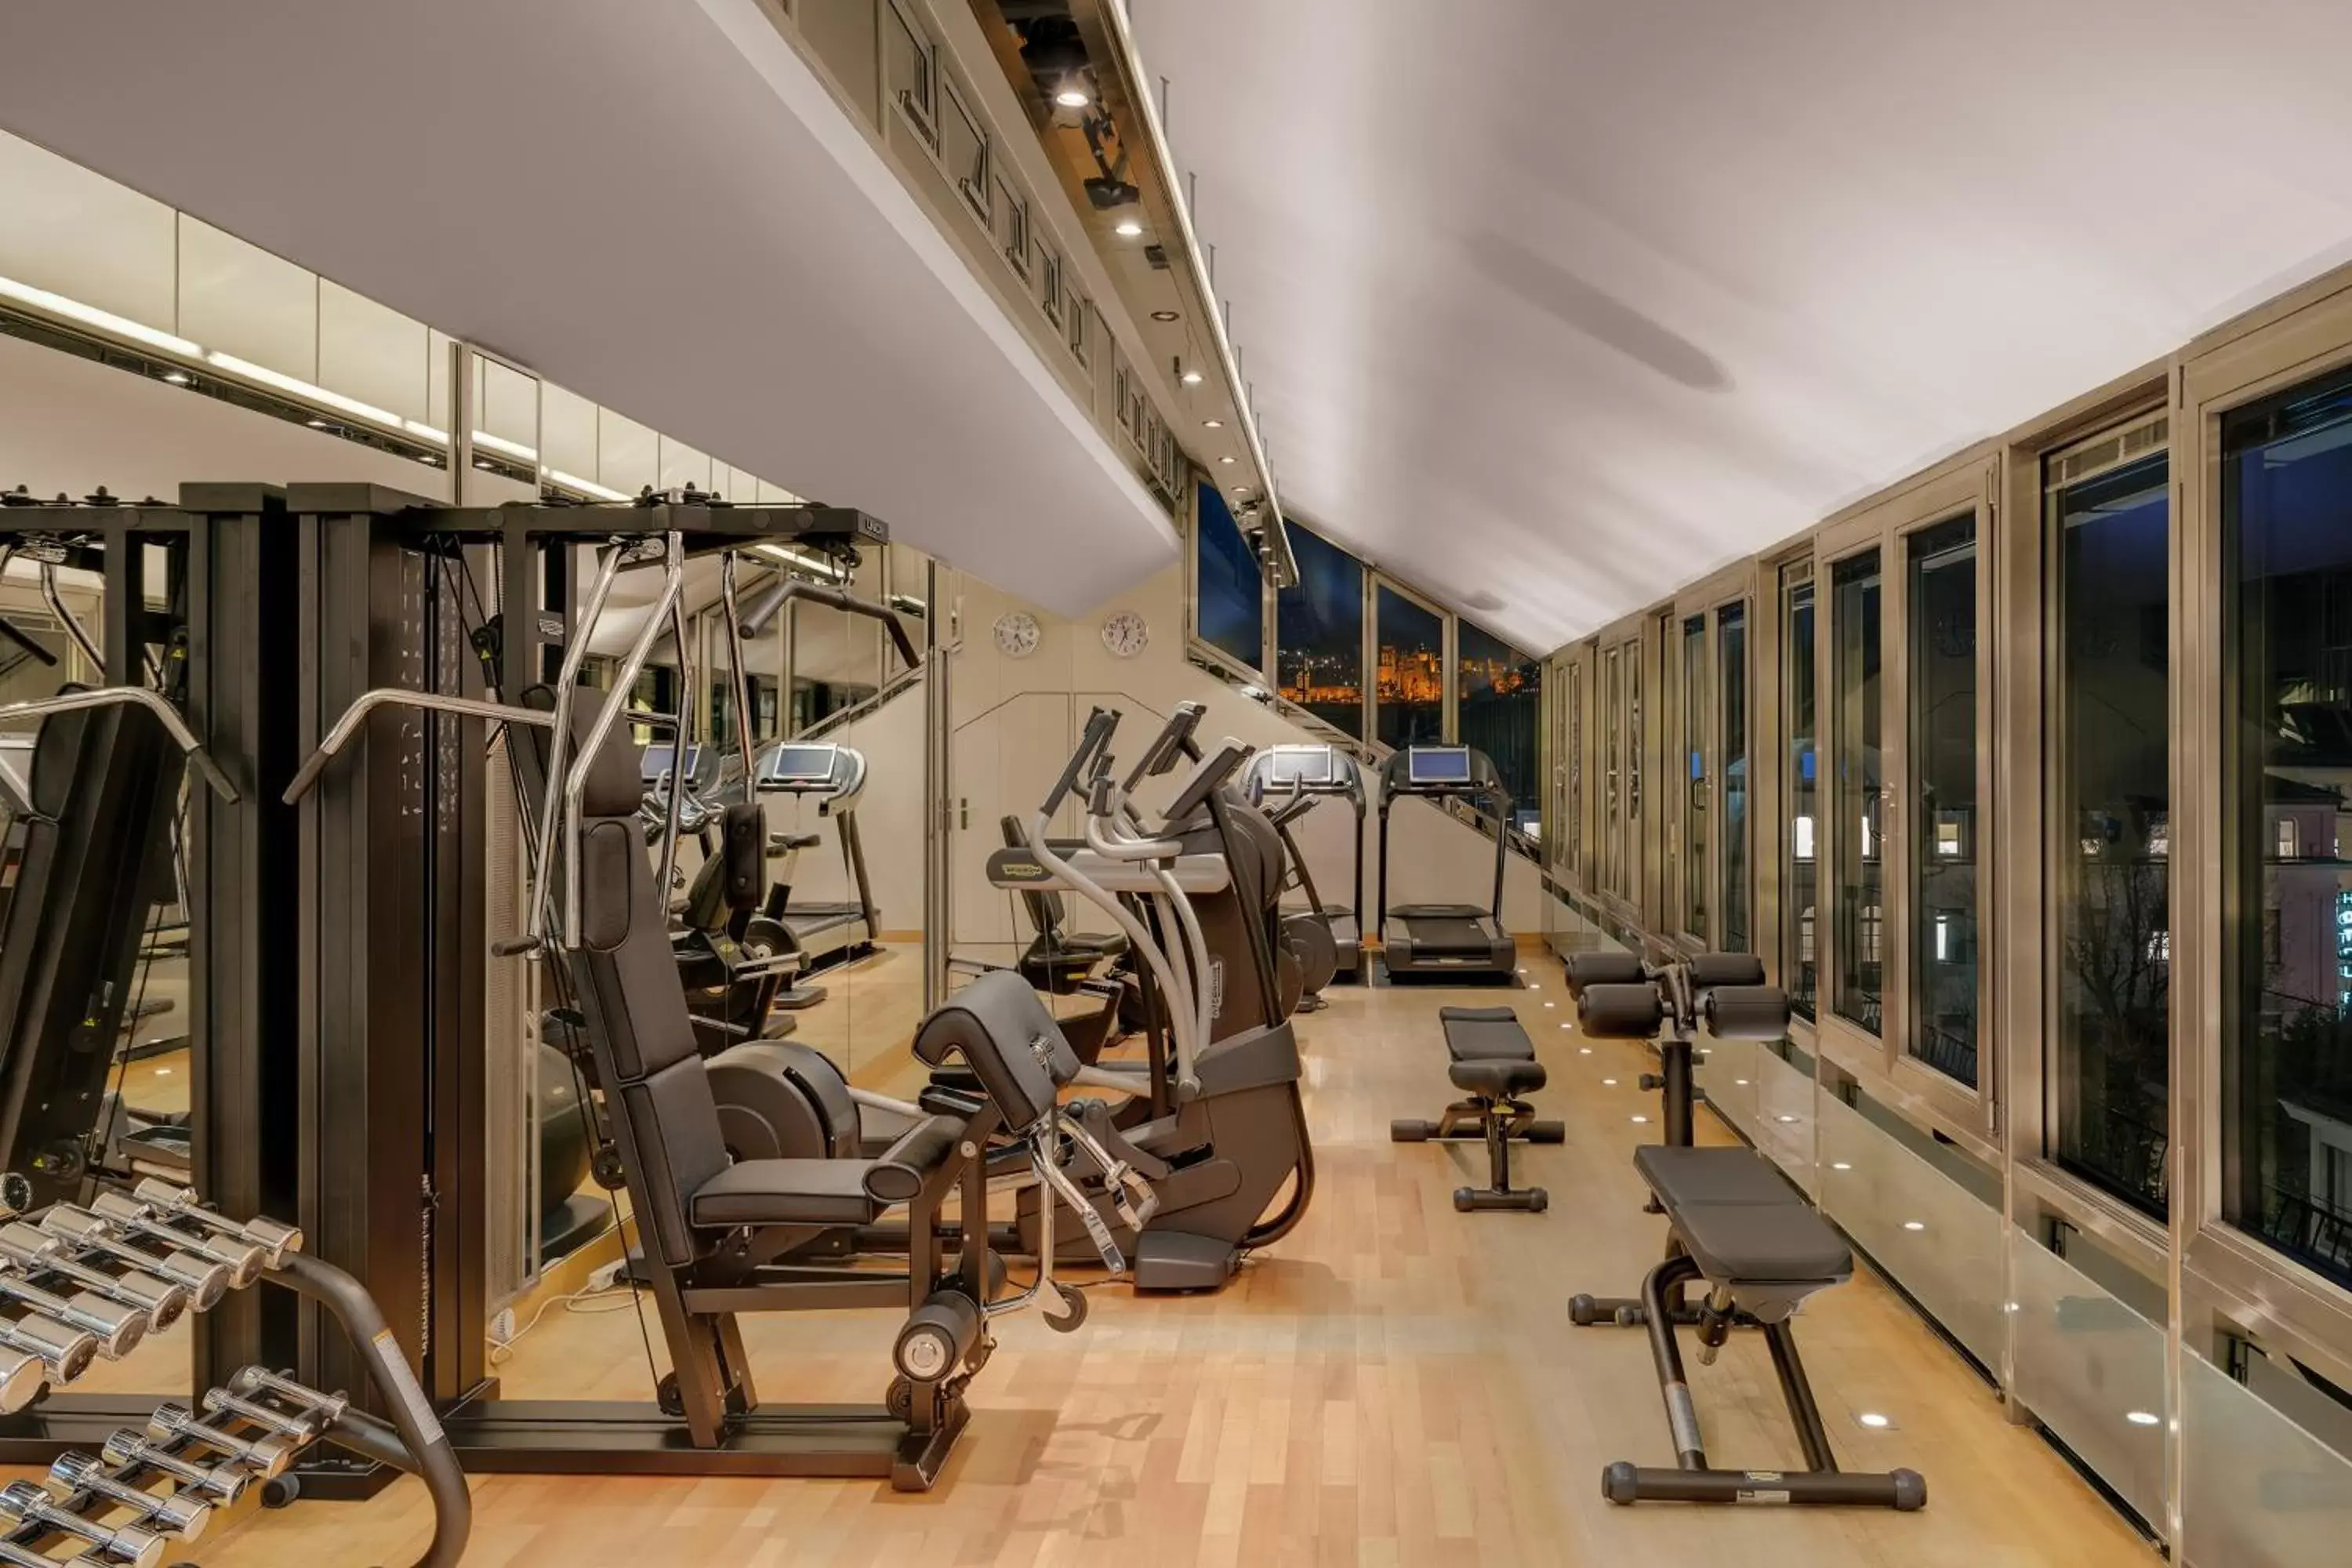 Fitness centre/facilities, Fitness Center/Facilities in Hotel Europäischer Hof Heidelberg